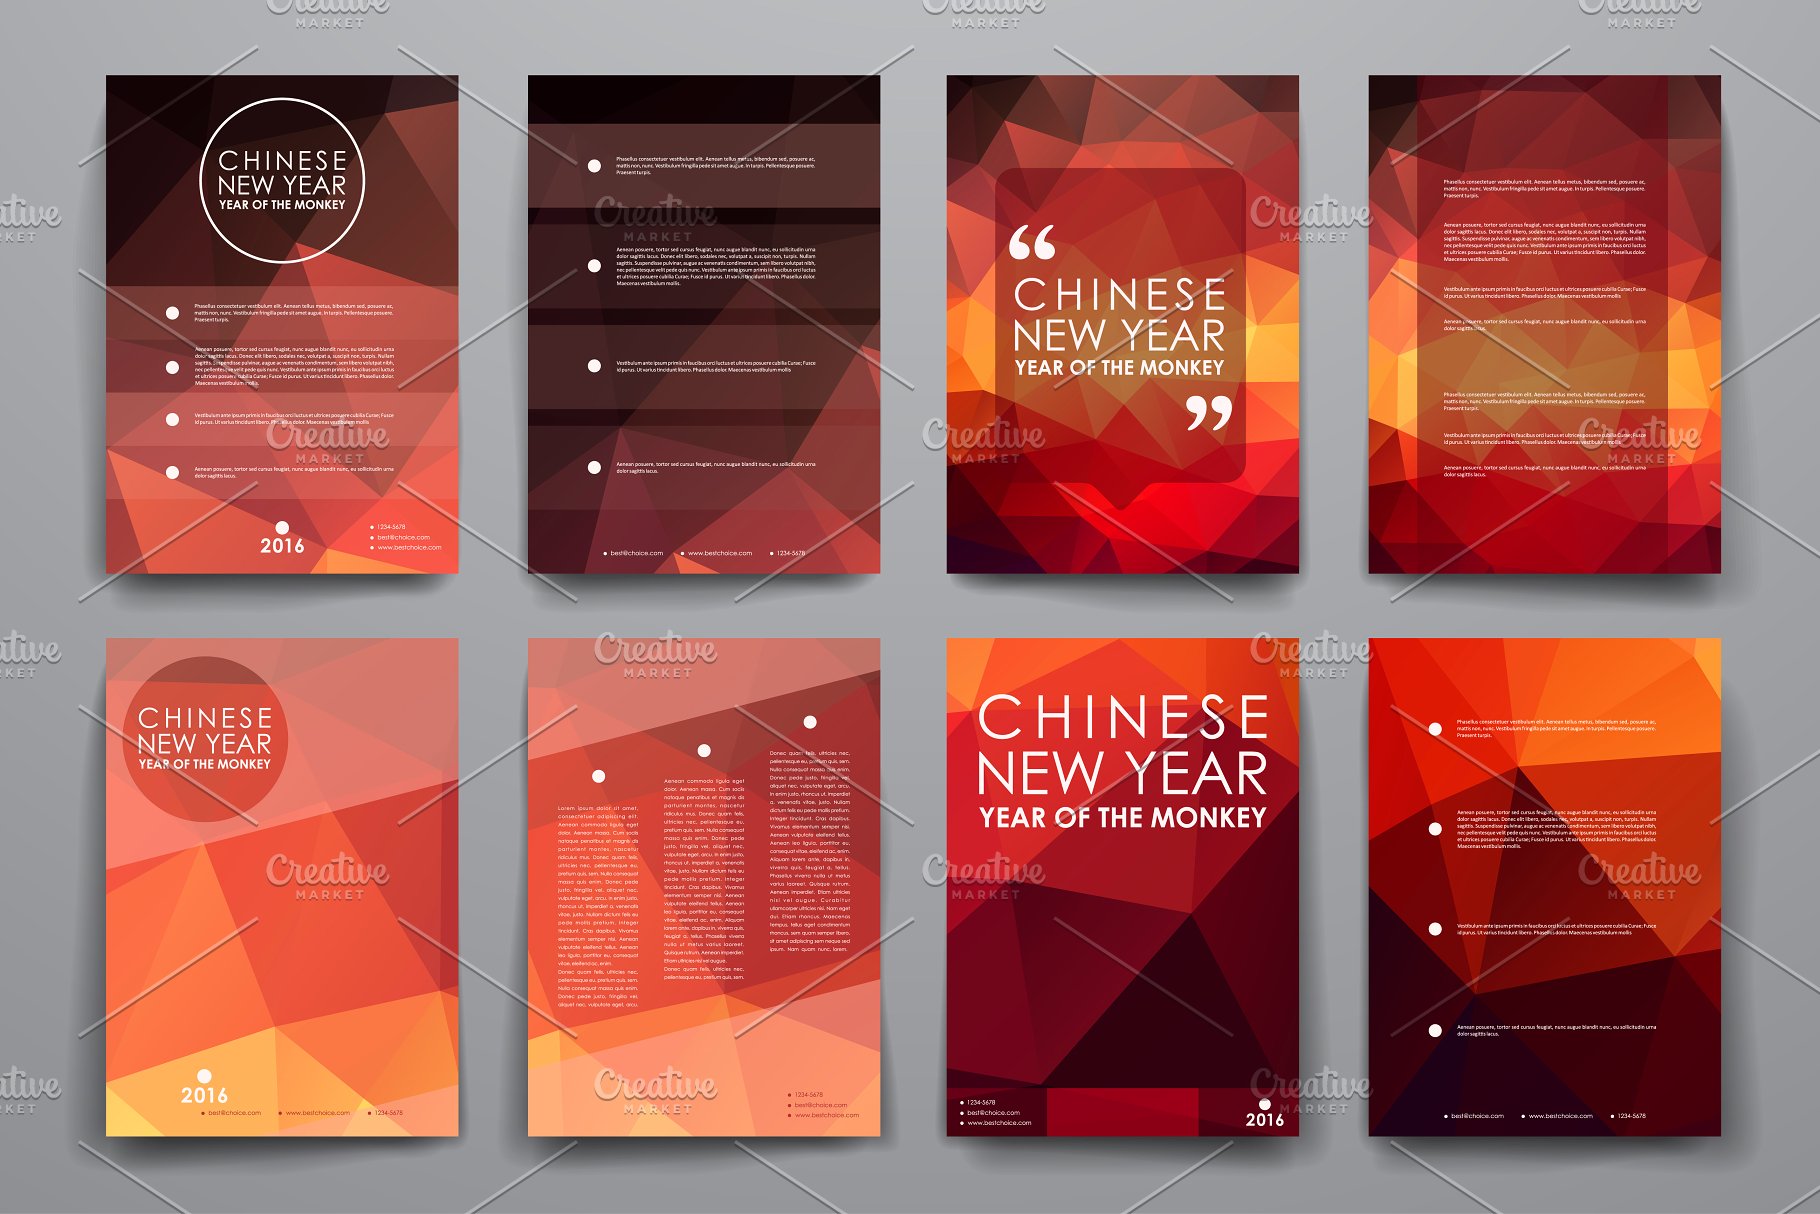 中国新年主题风小册子画册模板 Chinese New Year Brochures插图1